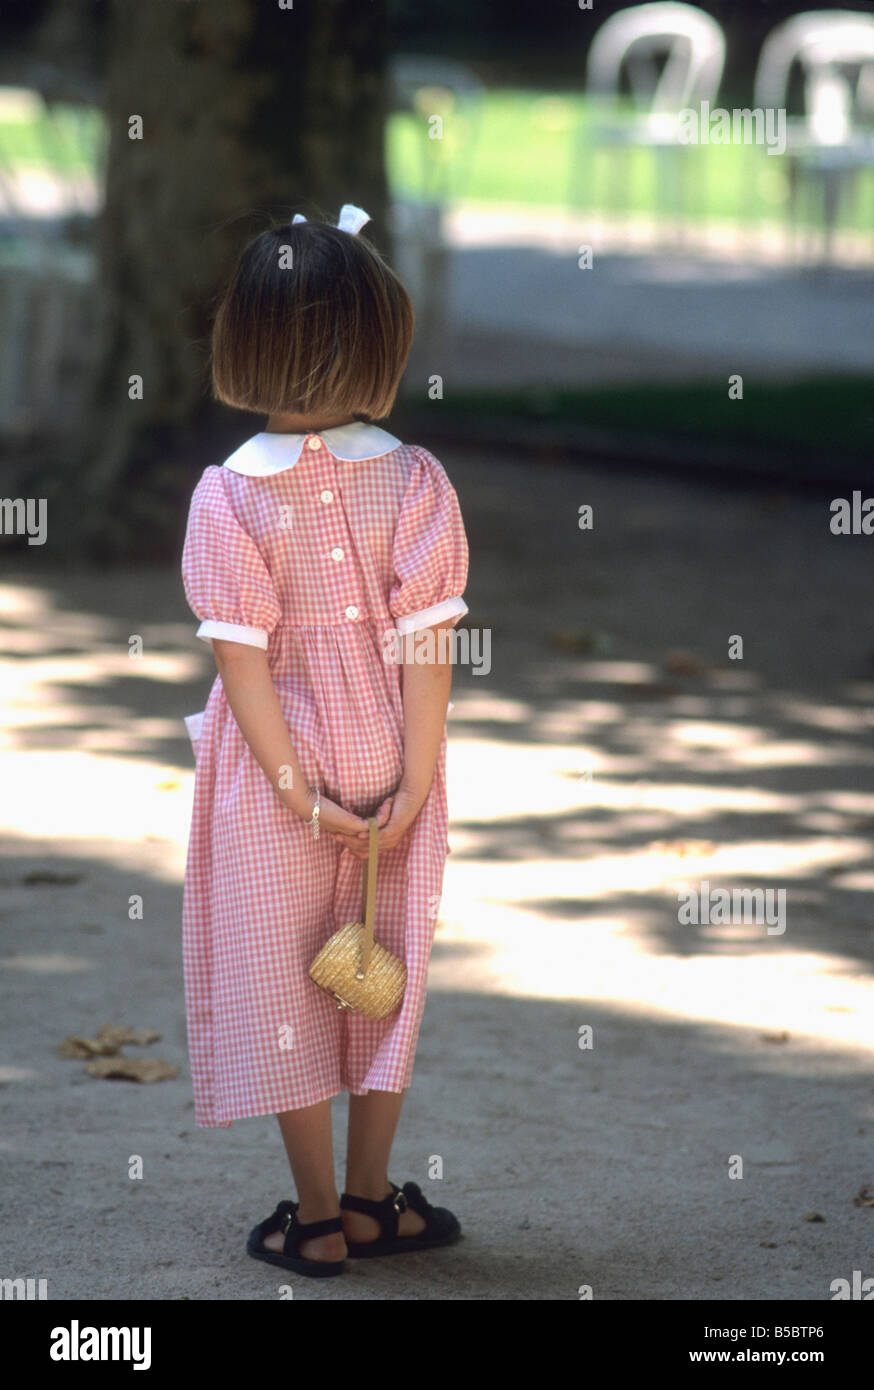 Kleines Mädchen in einem hübschen roten aufgegebenes Kleid und Schleife im Haar in einem park Stockfoto